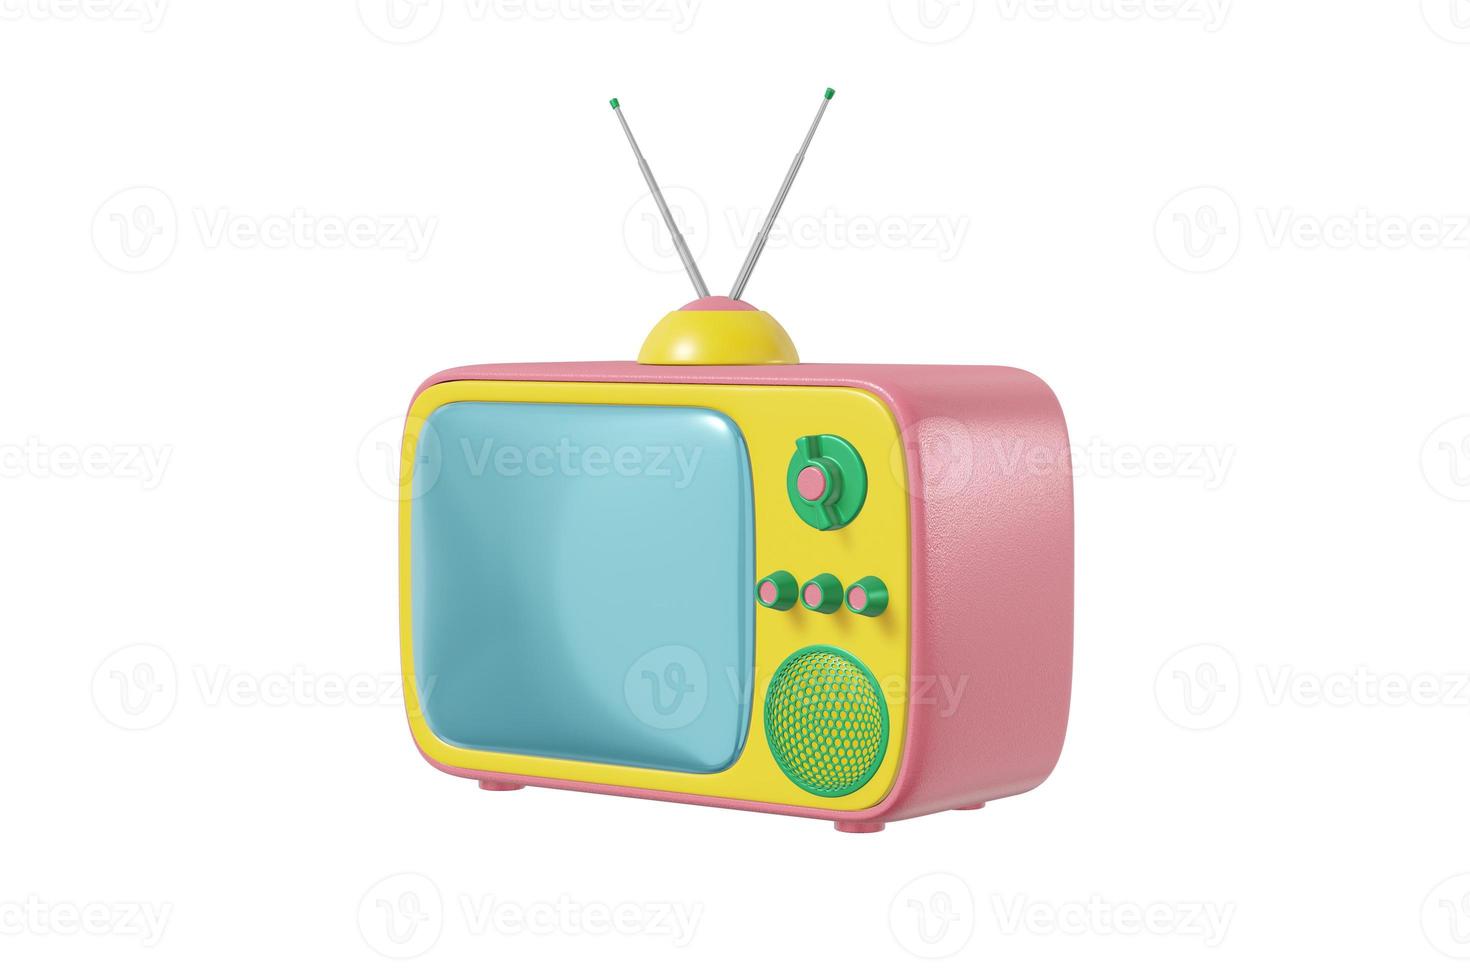 téléviseur avec antenne cartoon style couleur jaune rose vif isolé fond blanc. concept de design vintage minimaliste. rendu 3d photo